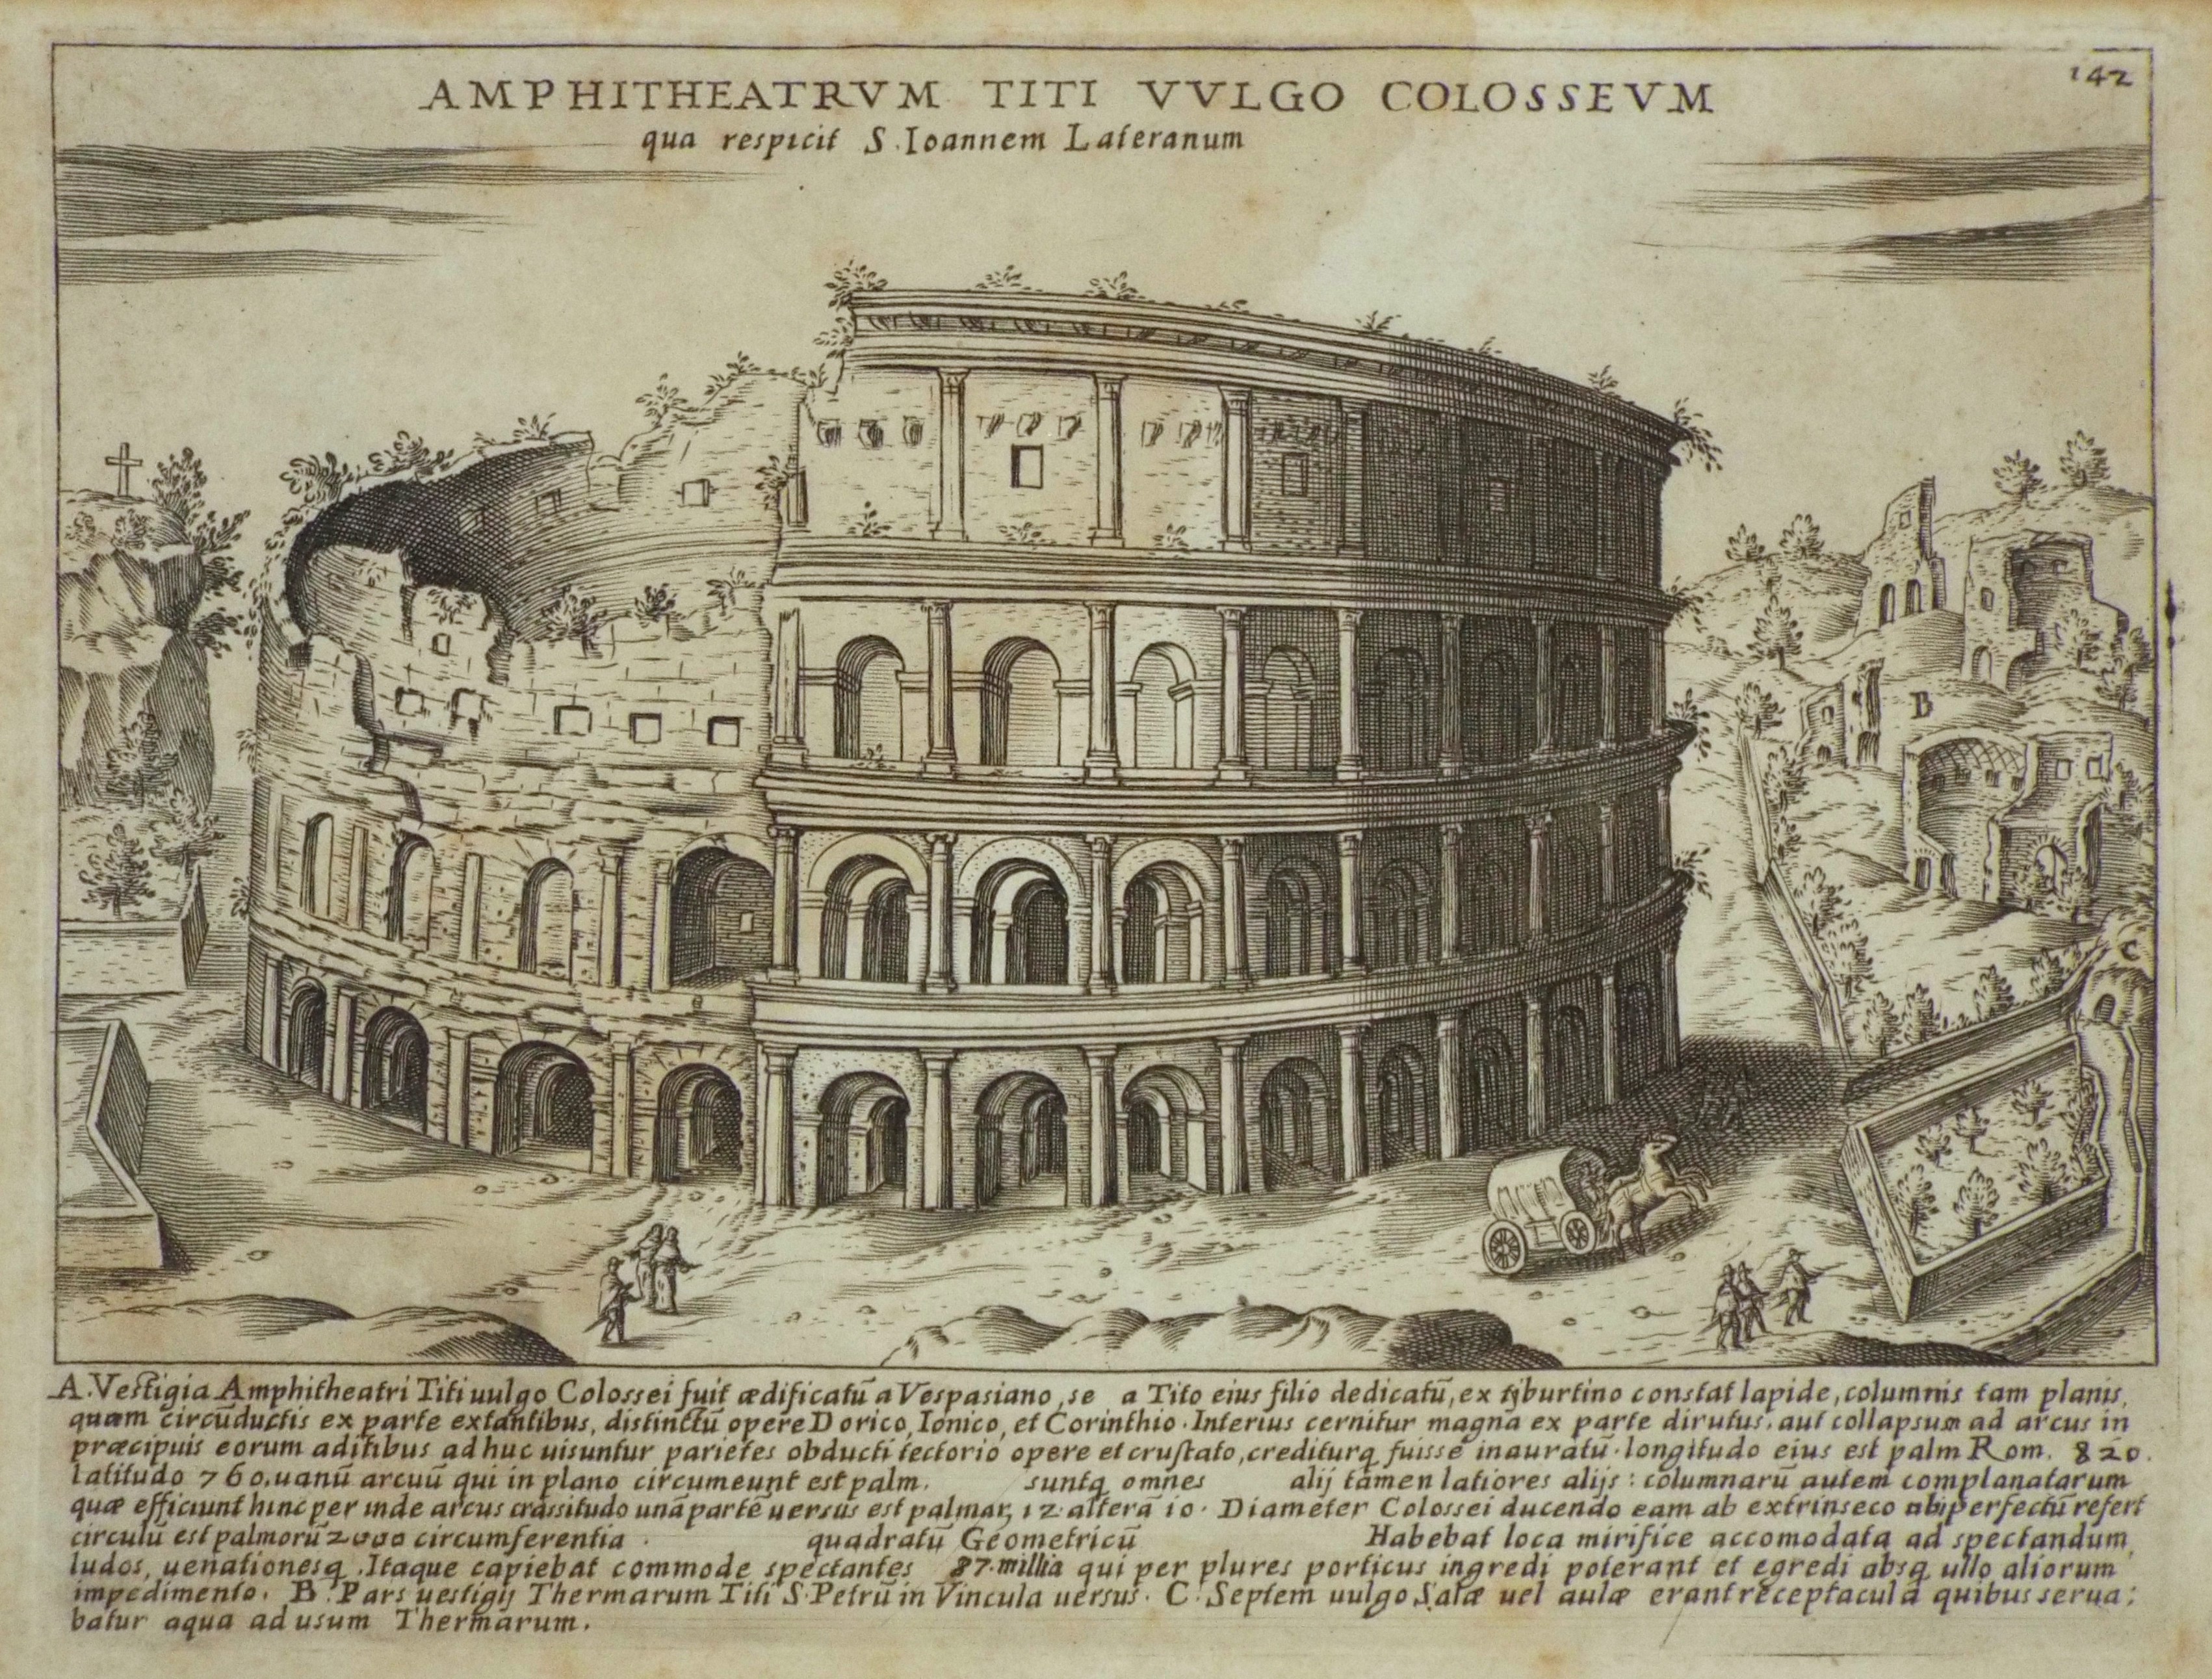 Print - Ampitheatrum Titi Vulgo Colosseum. qua respicit S. Ioannem Lateranum. - Lauro